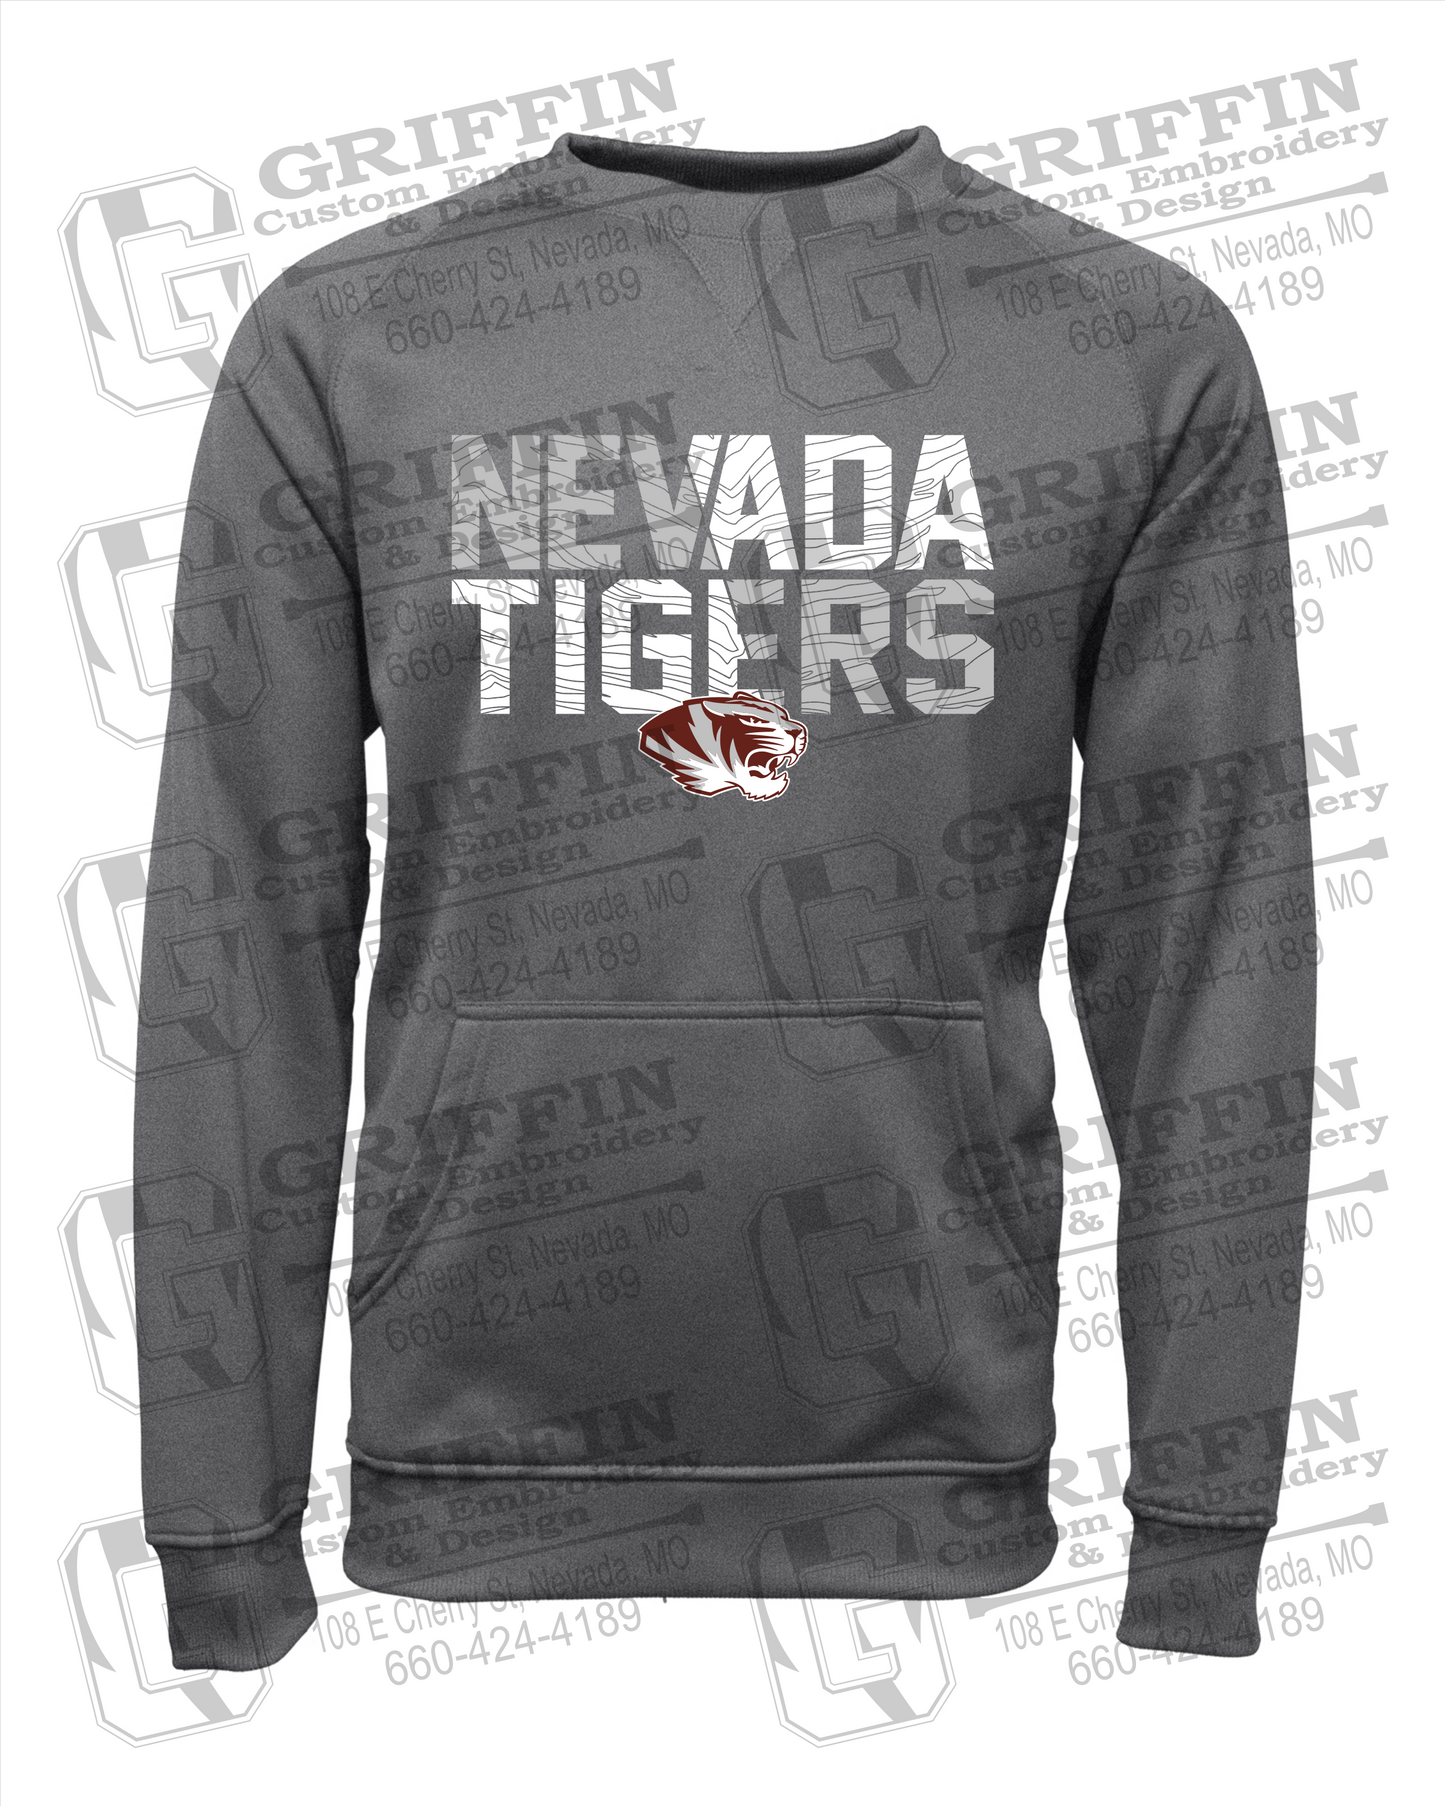 Nevada Tigers 23-L Sweatshirt